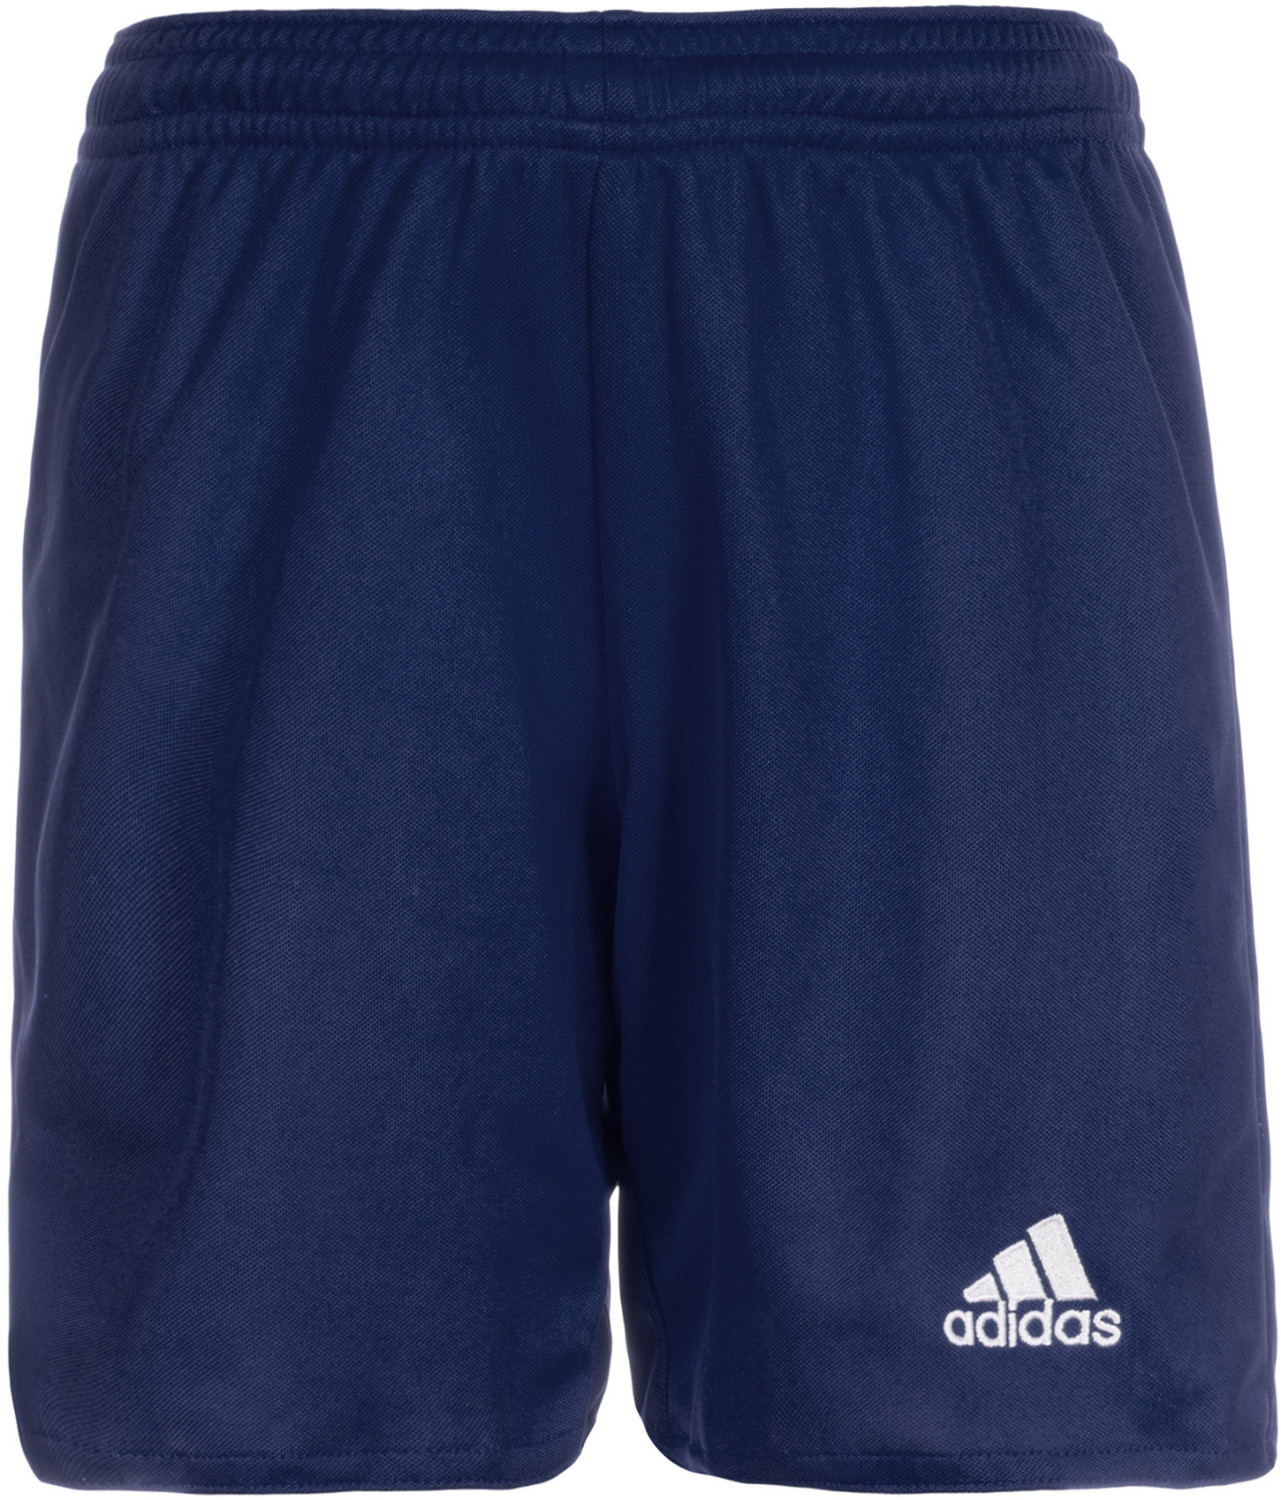 Adidas Parma 16 Shorts (2019)